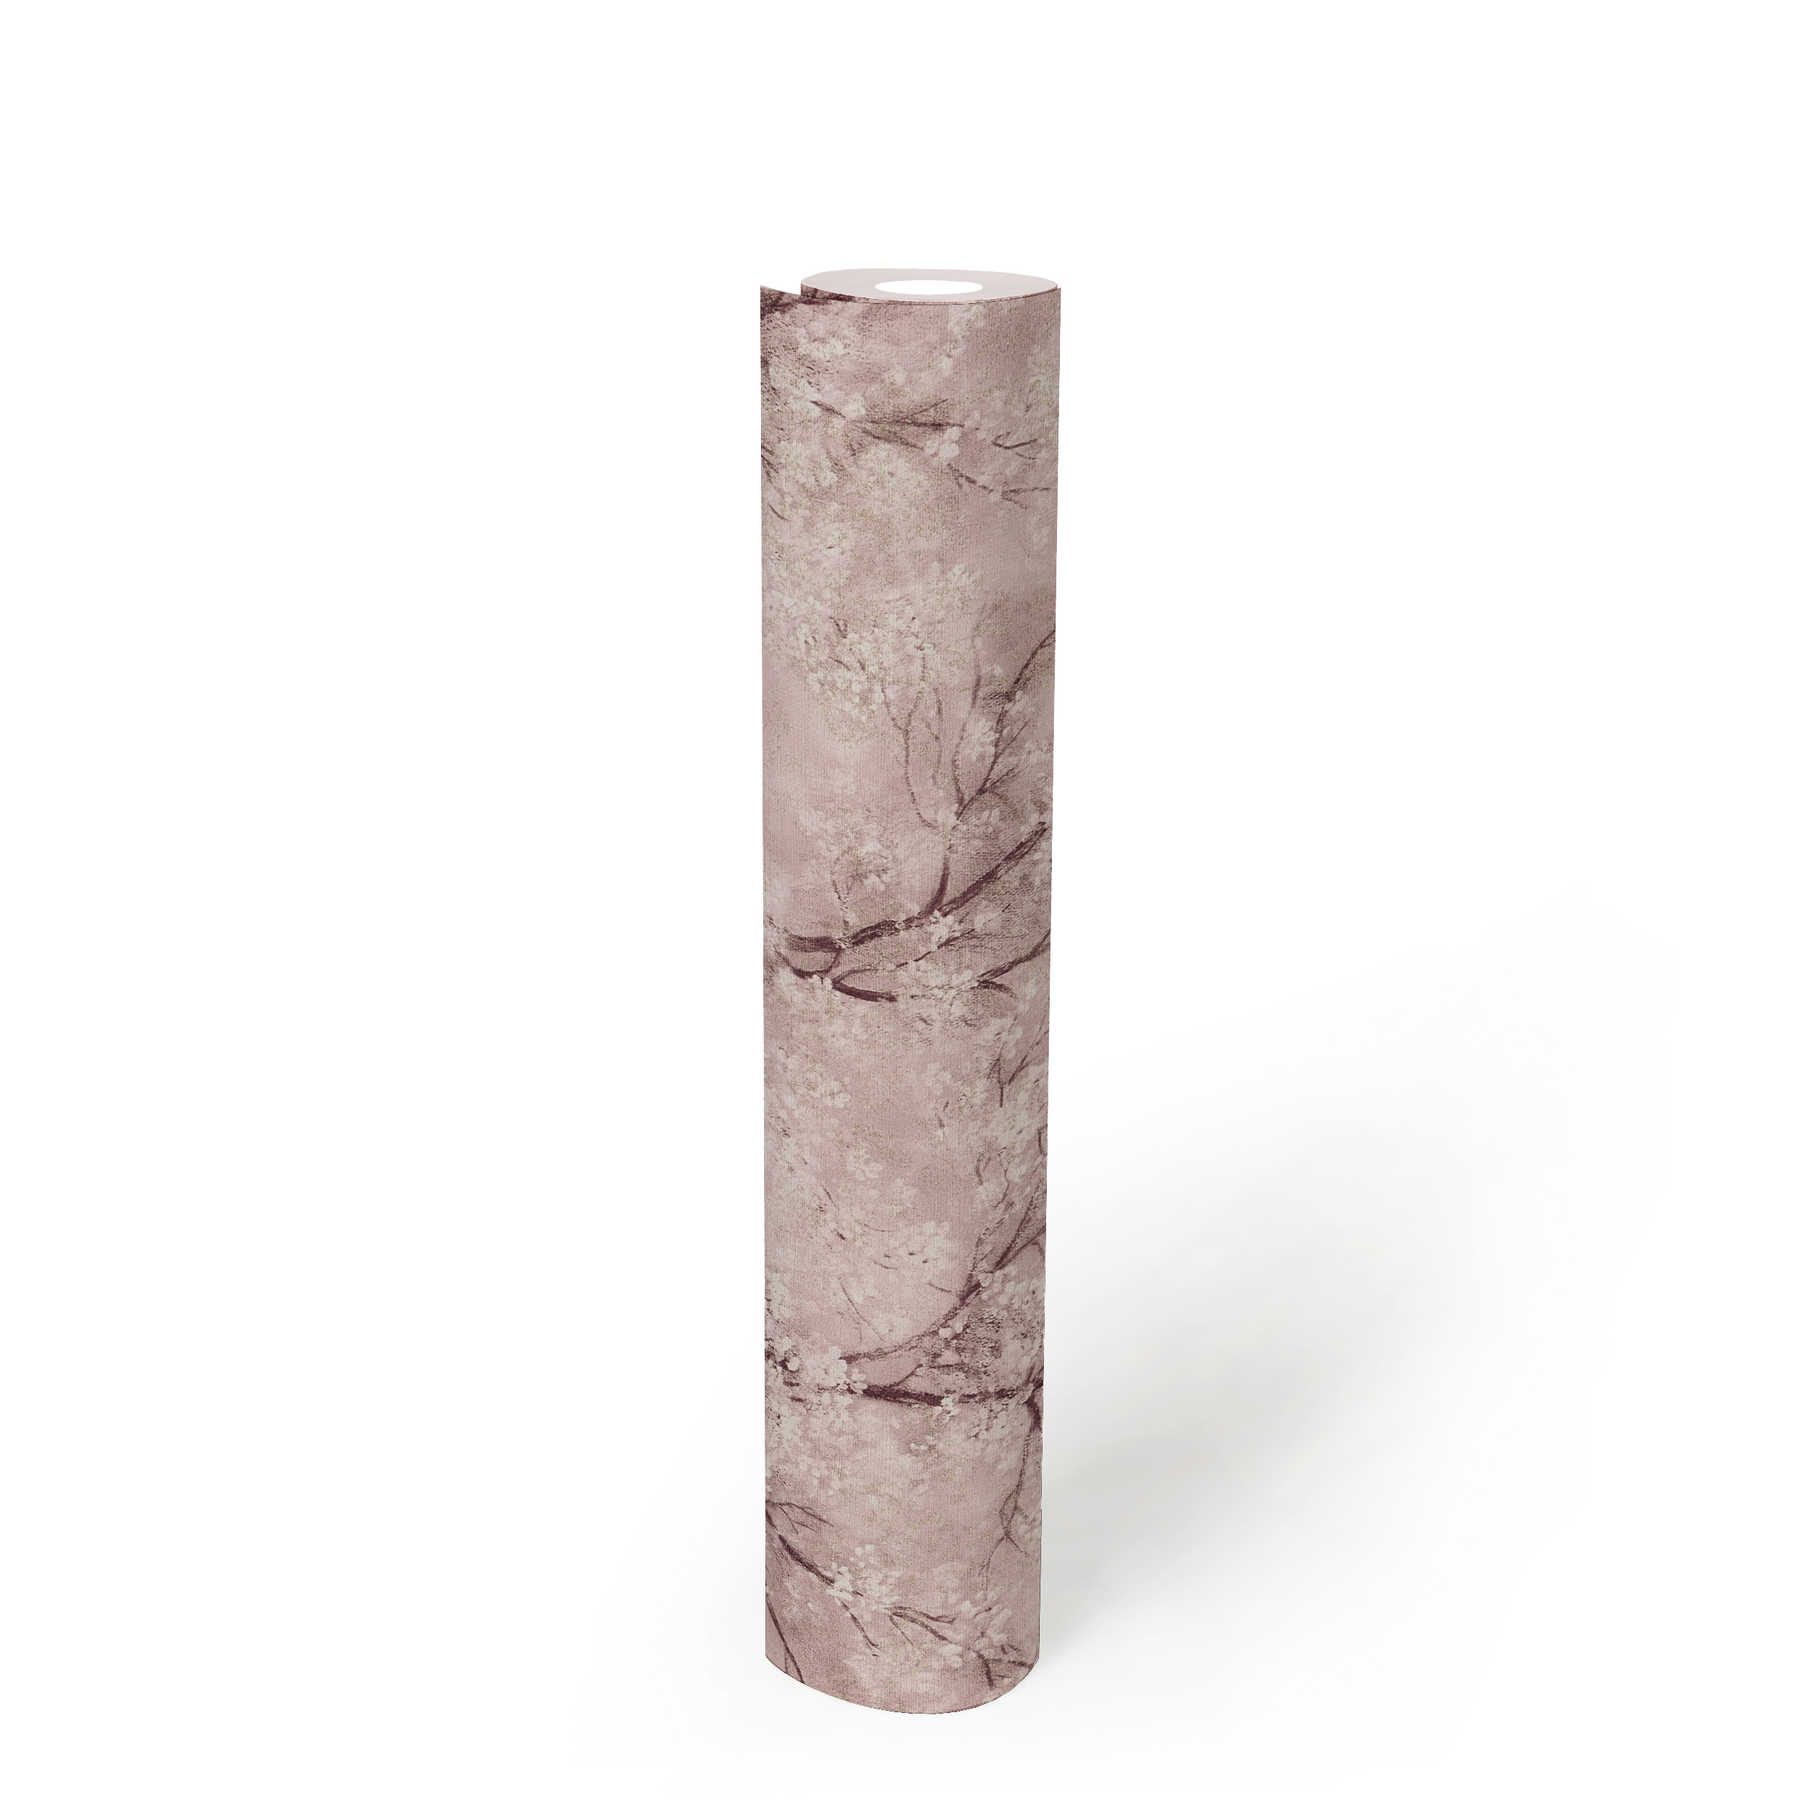             behang kersenbloesem glitter effect - roze, bruin, wit
        